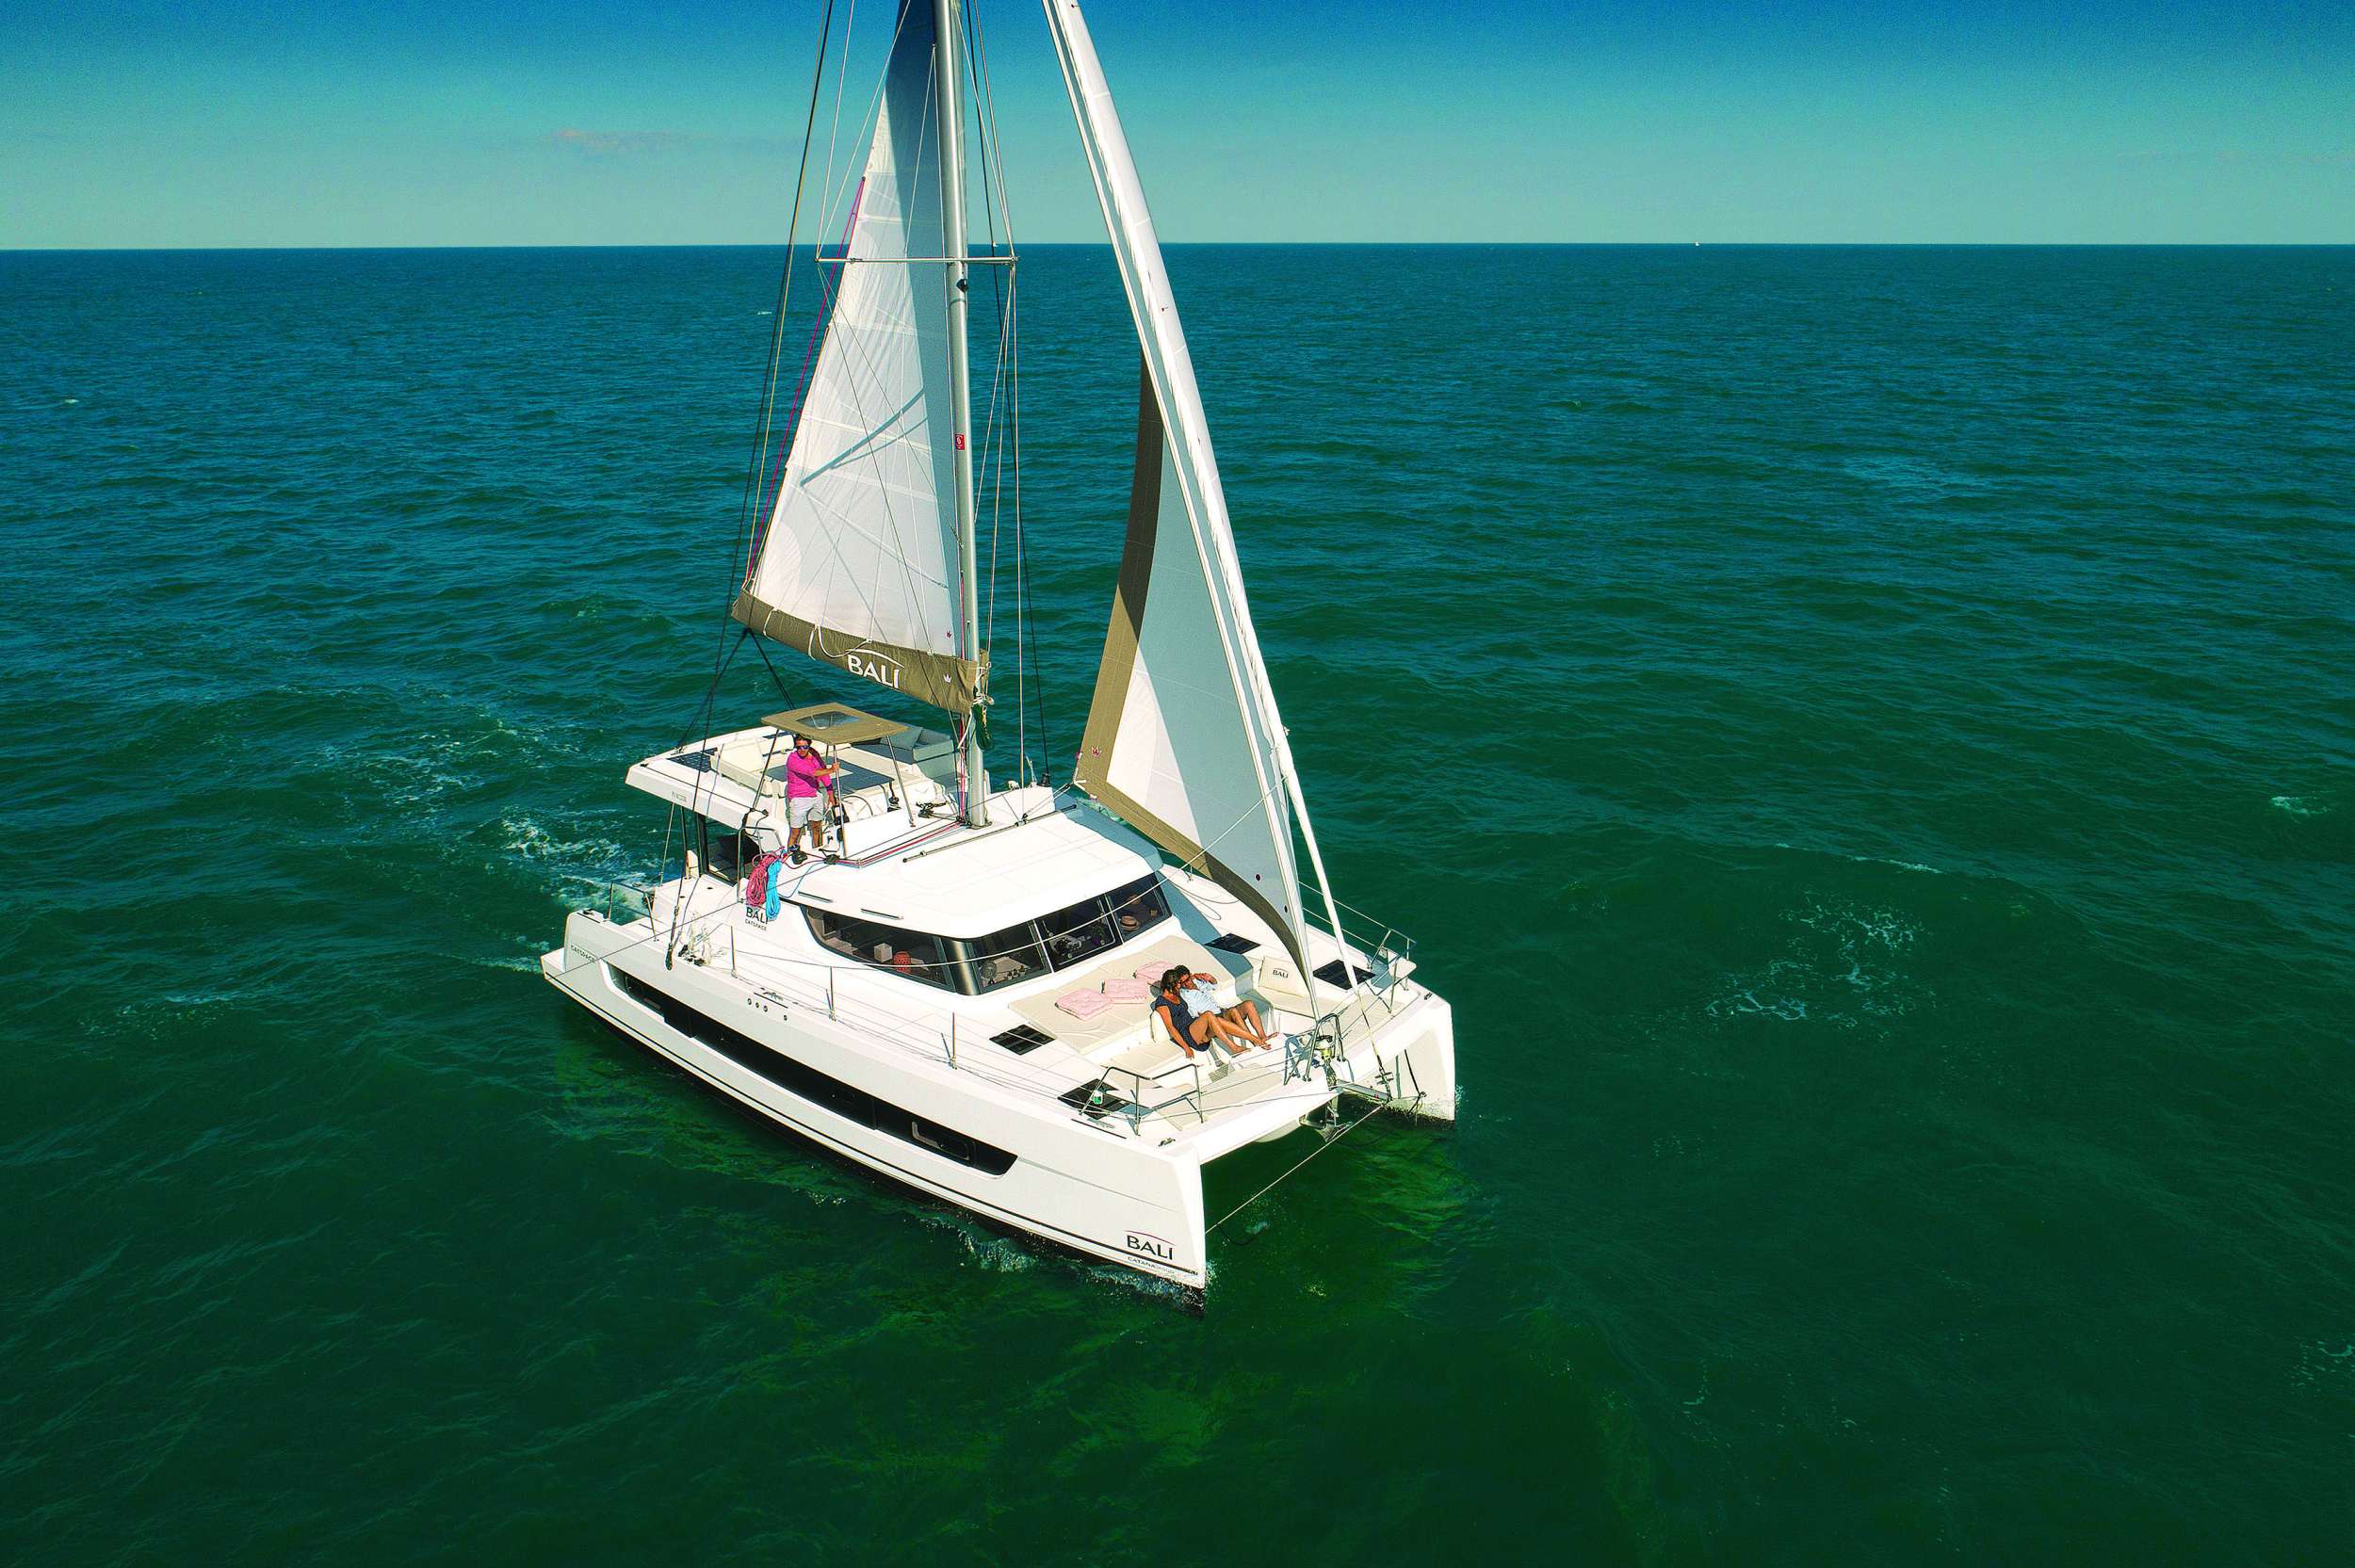 DORTOKA - Yacht Charter La Savina & Boat hire in Balearics & Spain 1